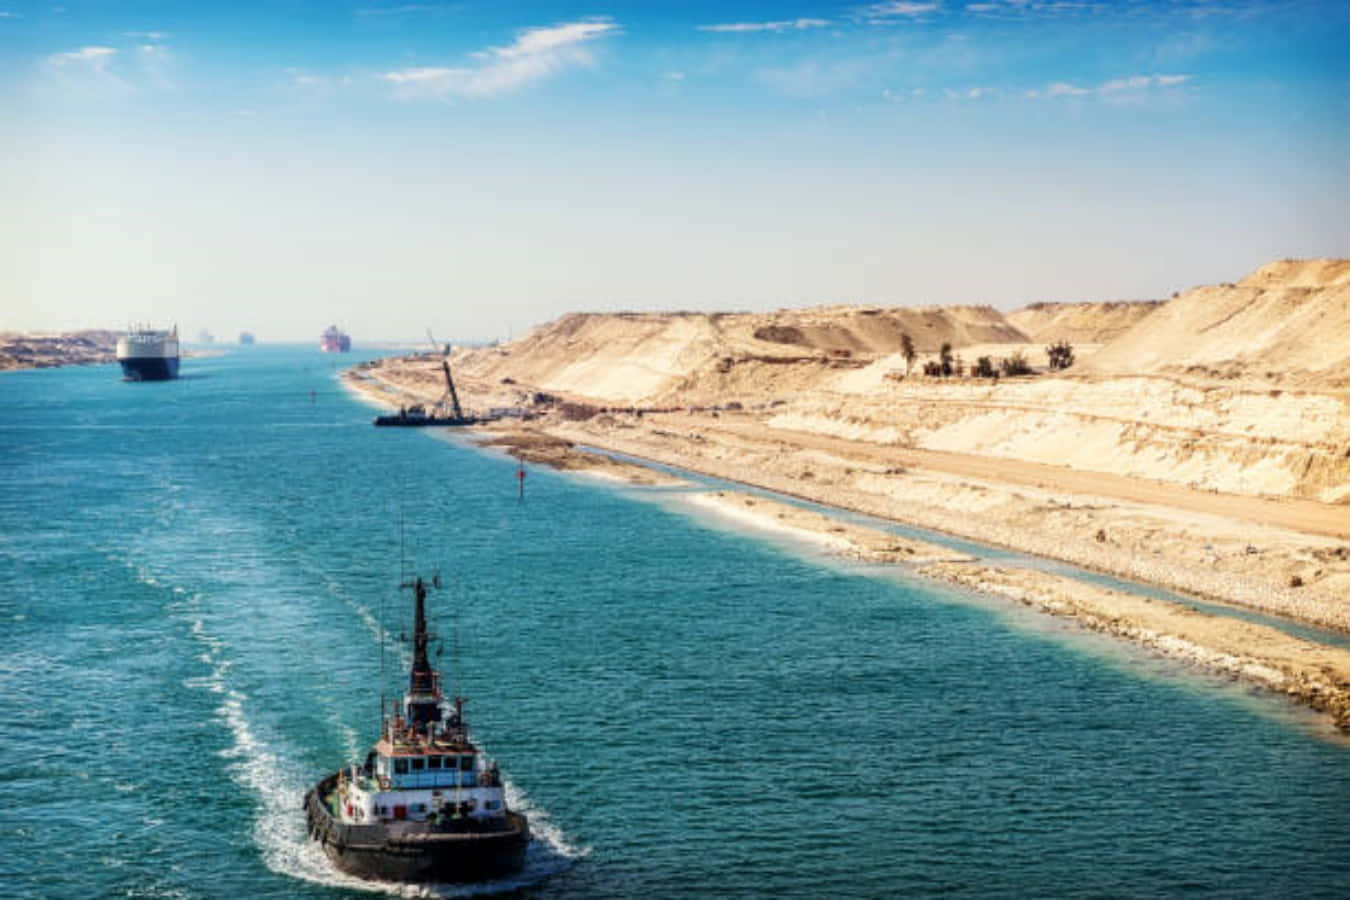 Naviospassando Pelo Canal De Suez, Uma Importante Rota Comercial Que Conecta O Mar Mediterrâneo Ao Mar Vermelho.